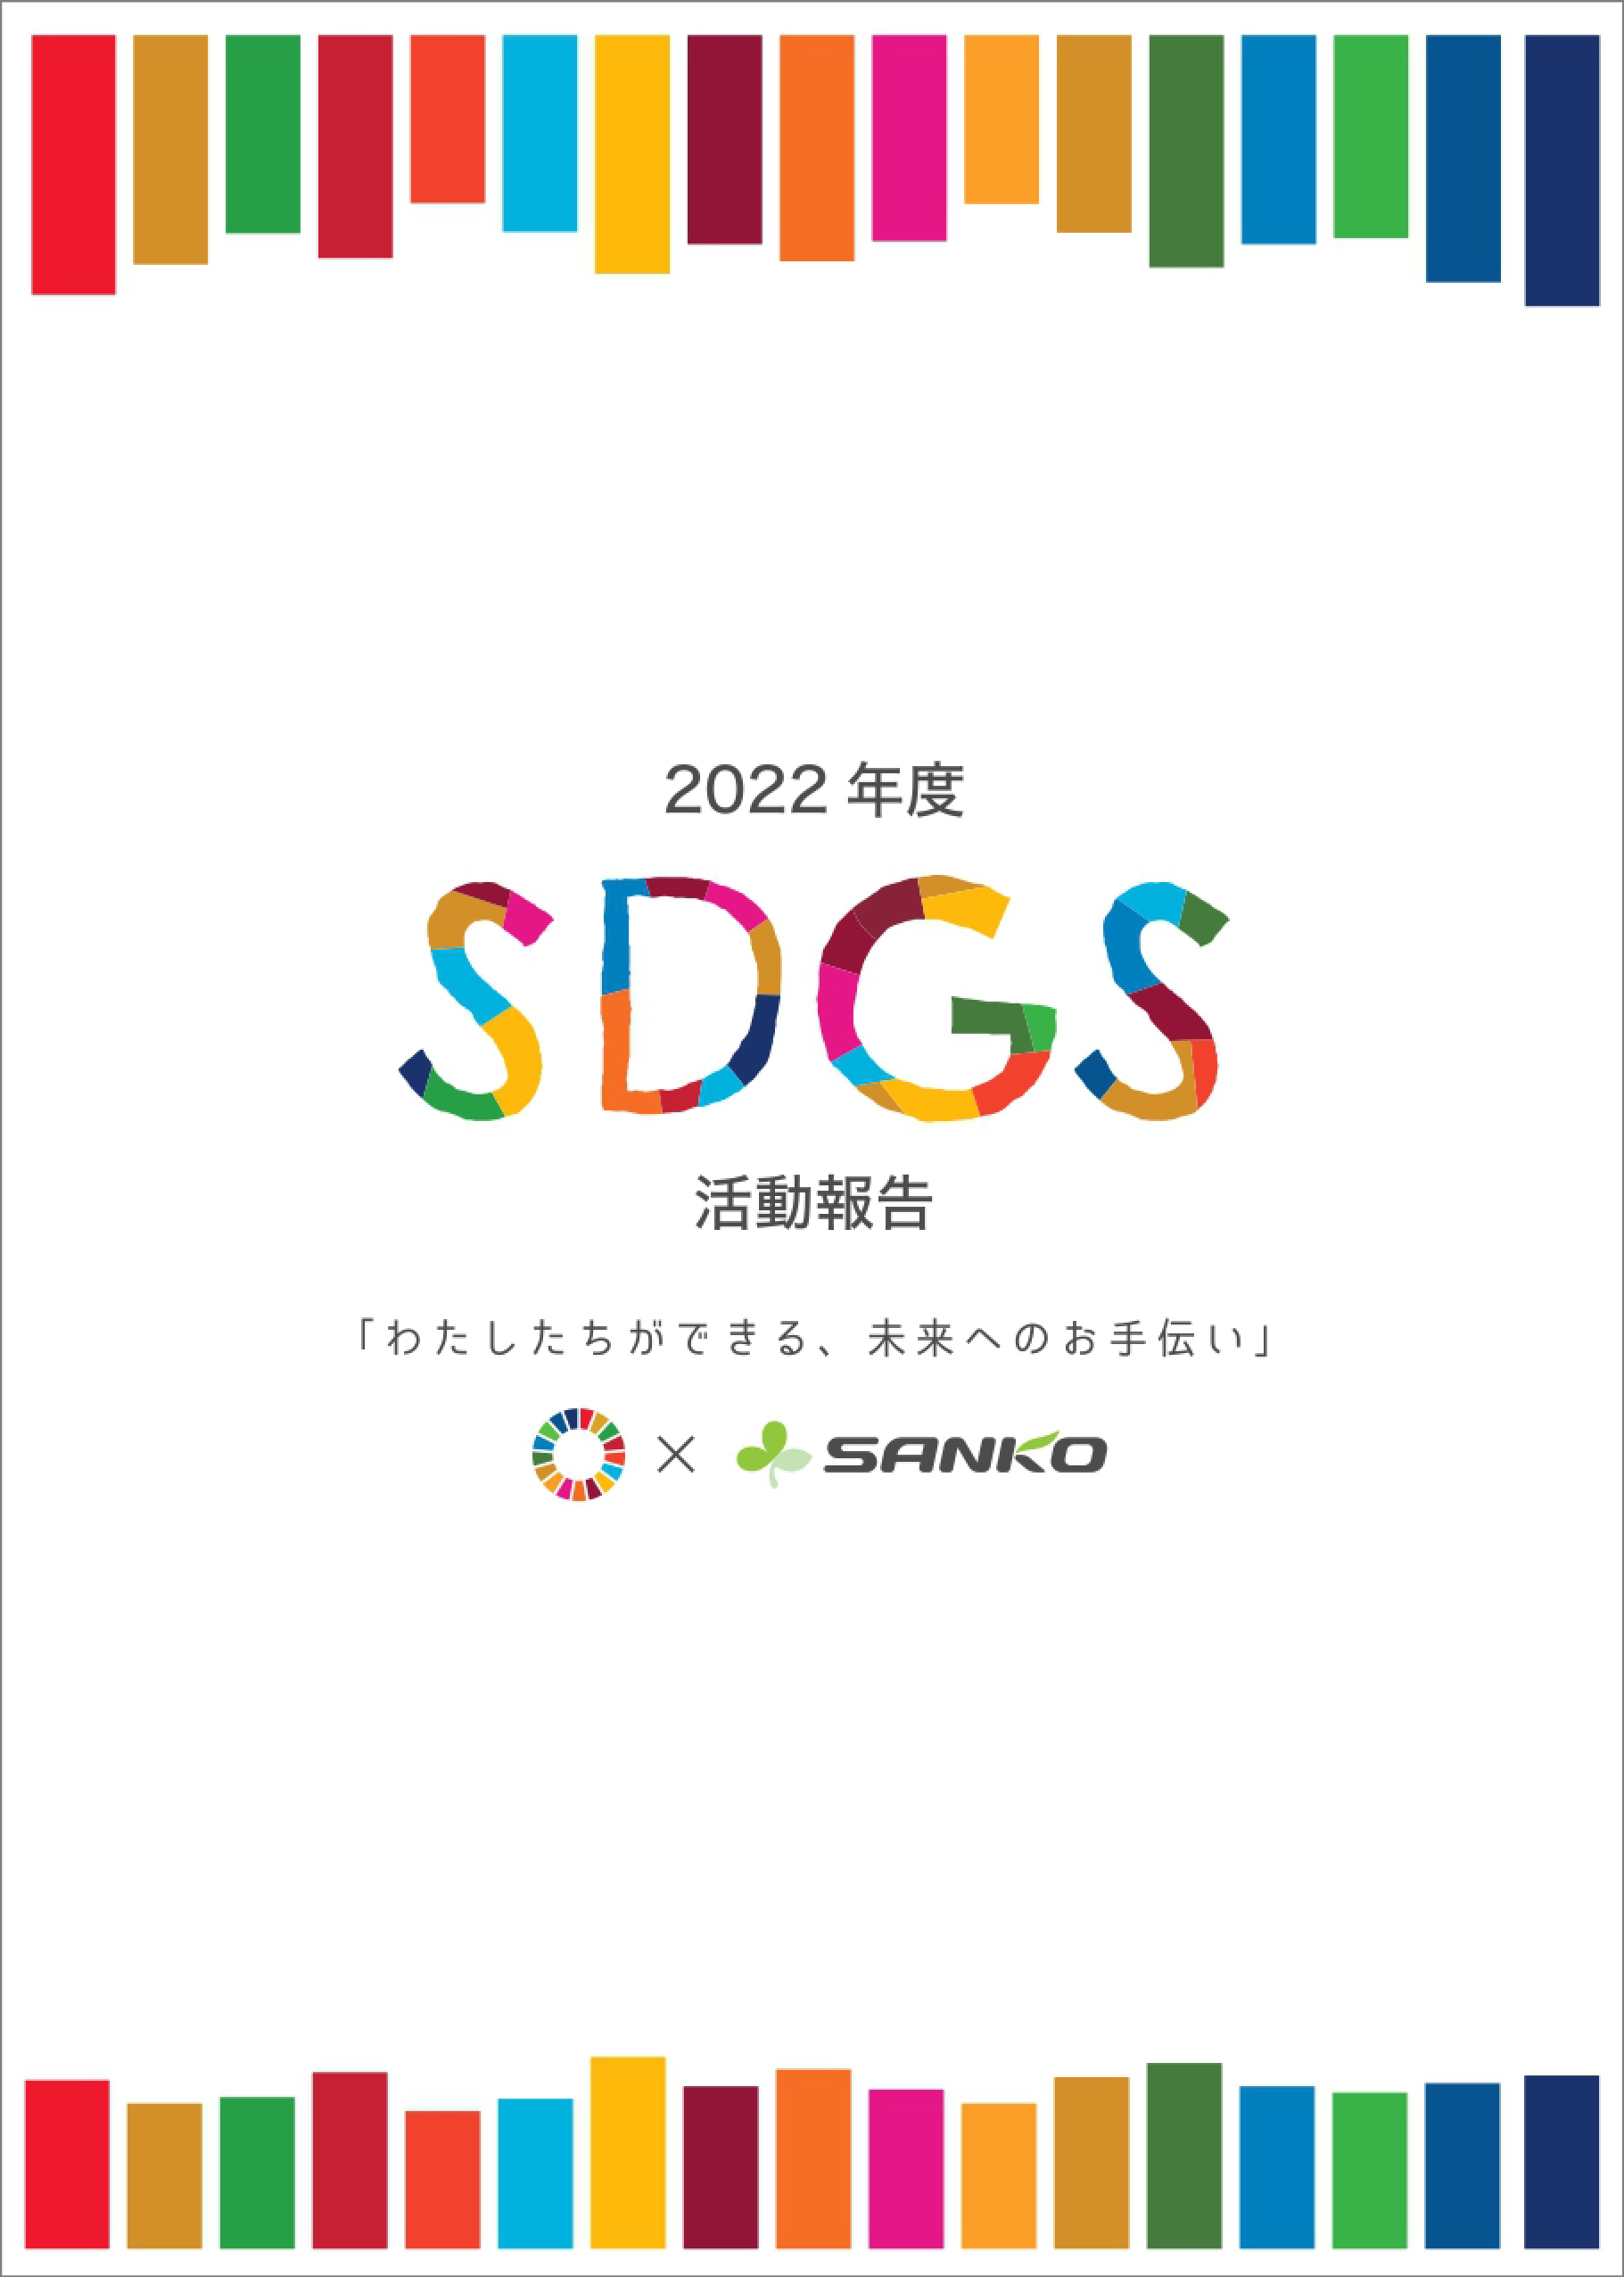 「2022年度SDGs活動報告」を発行しました